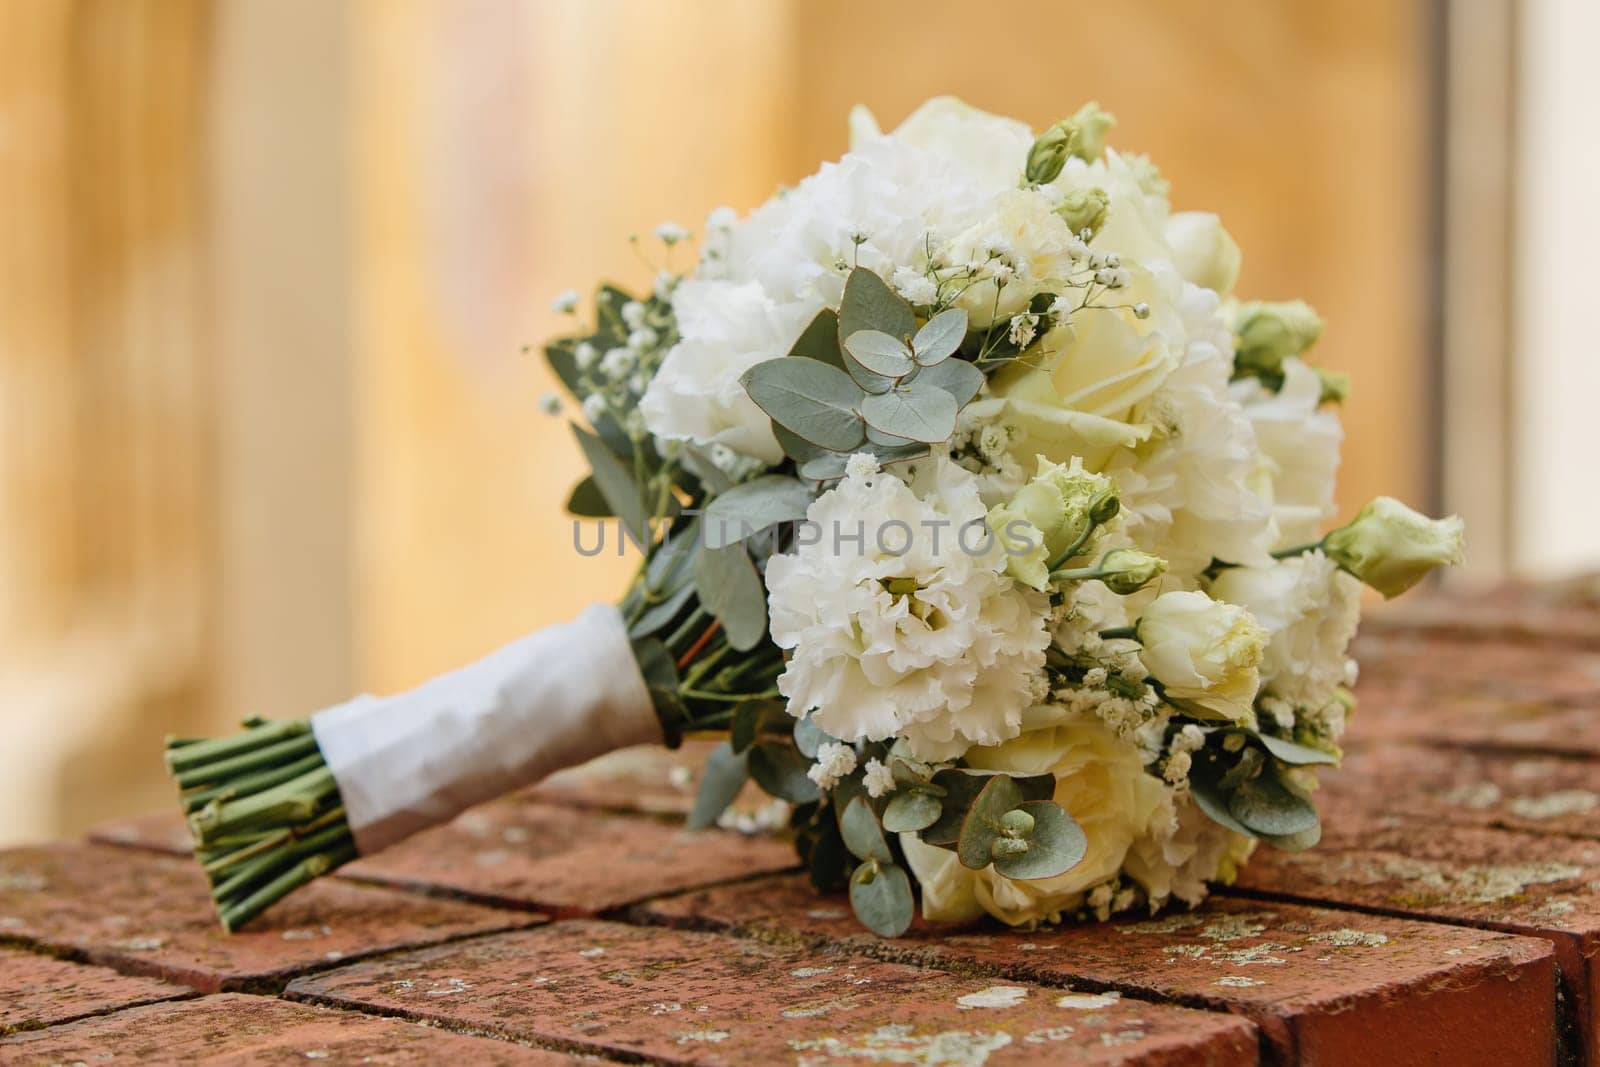 Bride's bouquet of fresh flowers. Close-up. Soft focus. by leonik